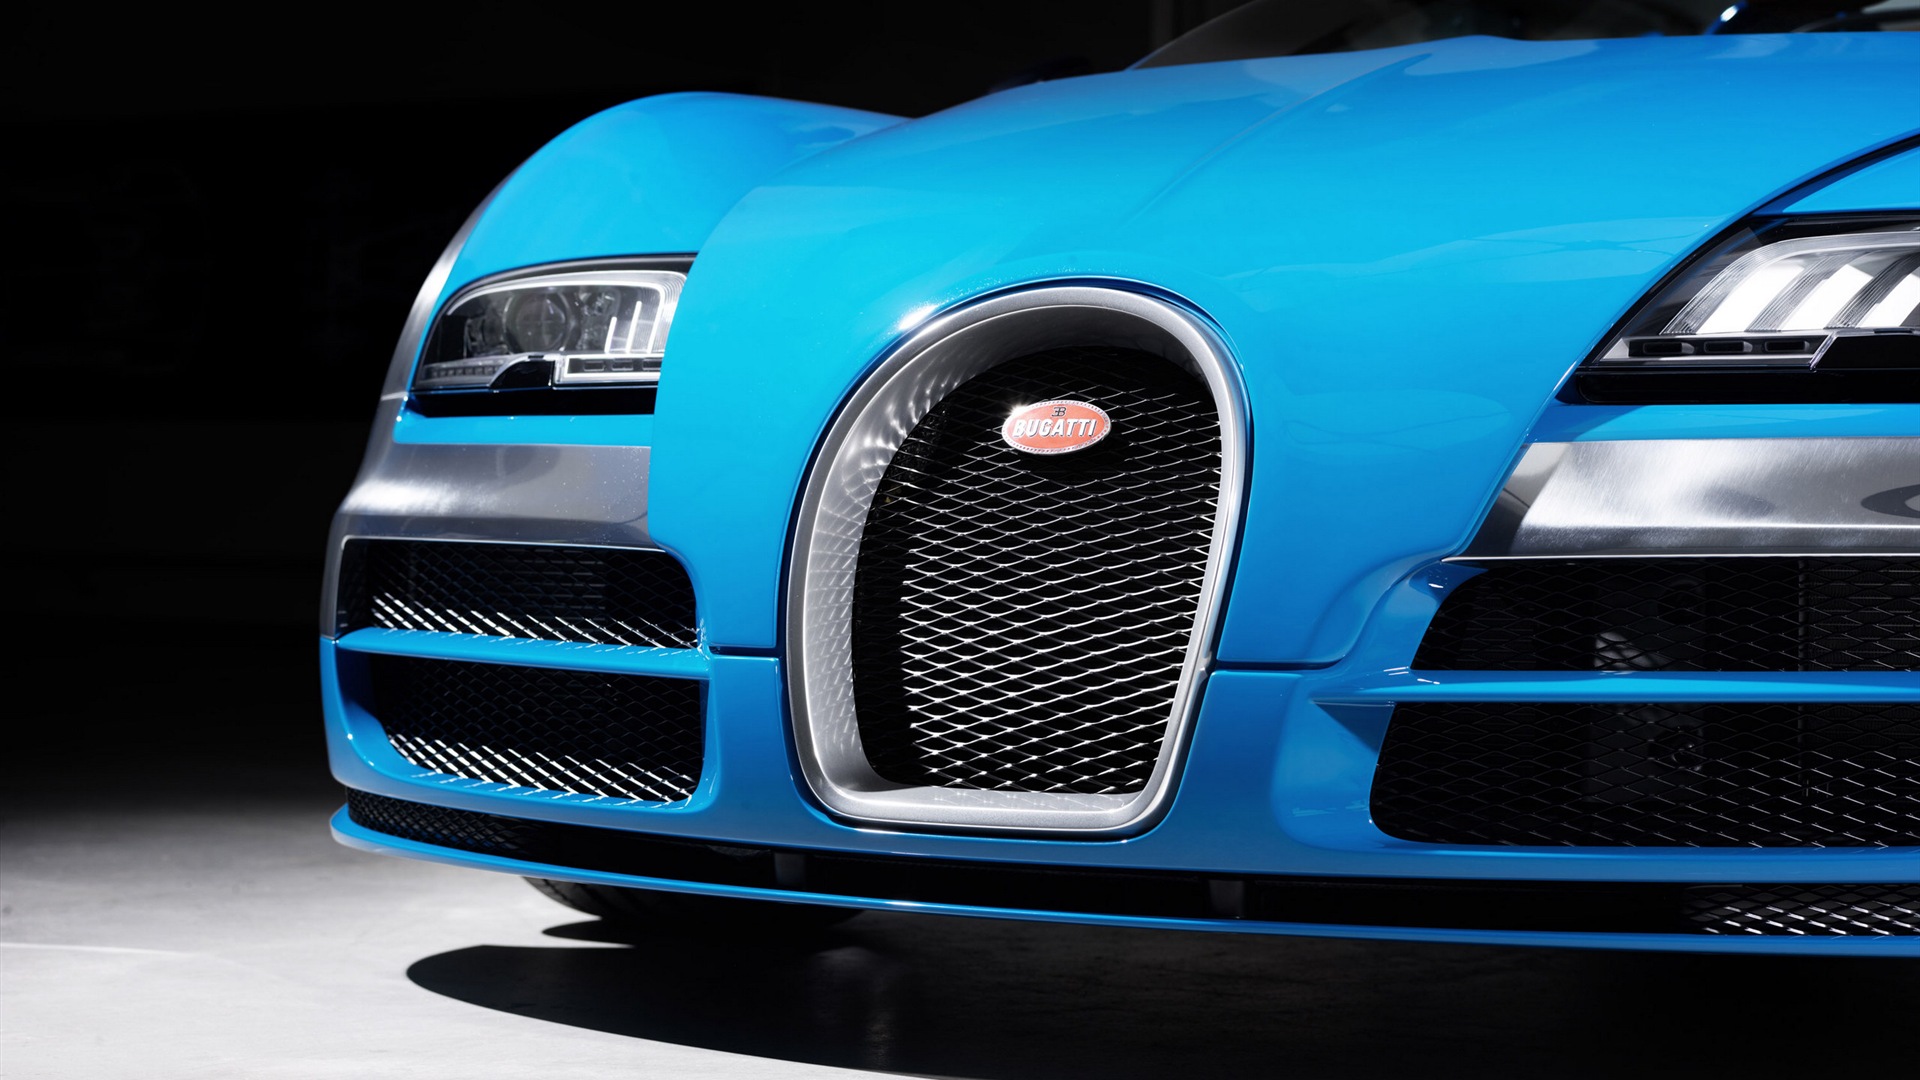 2013 Bugatti Veyron 16.4 Grand Sport Vitesse supercar fondos de pantalla de alta definición #3 - 1920x1080